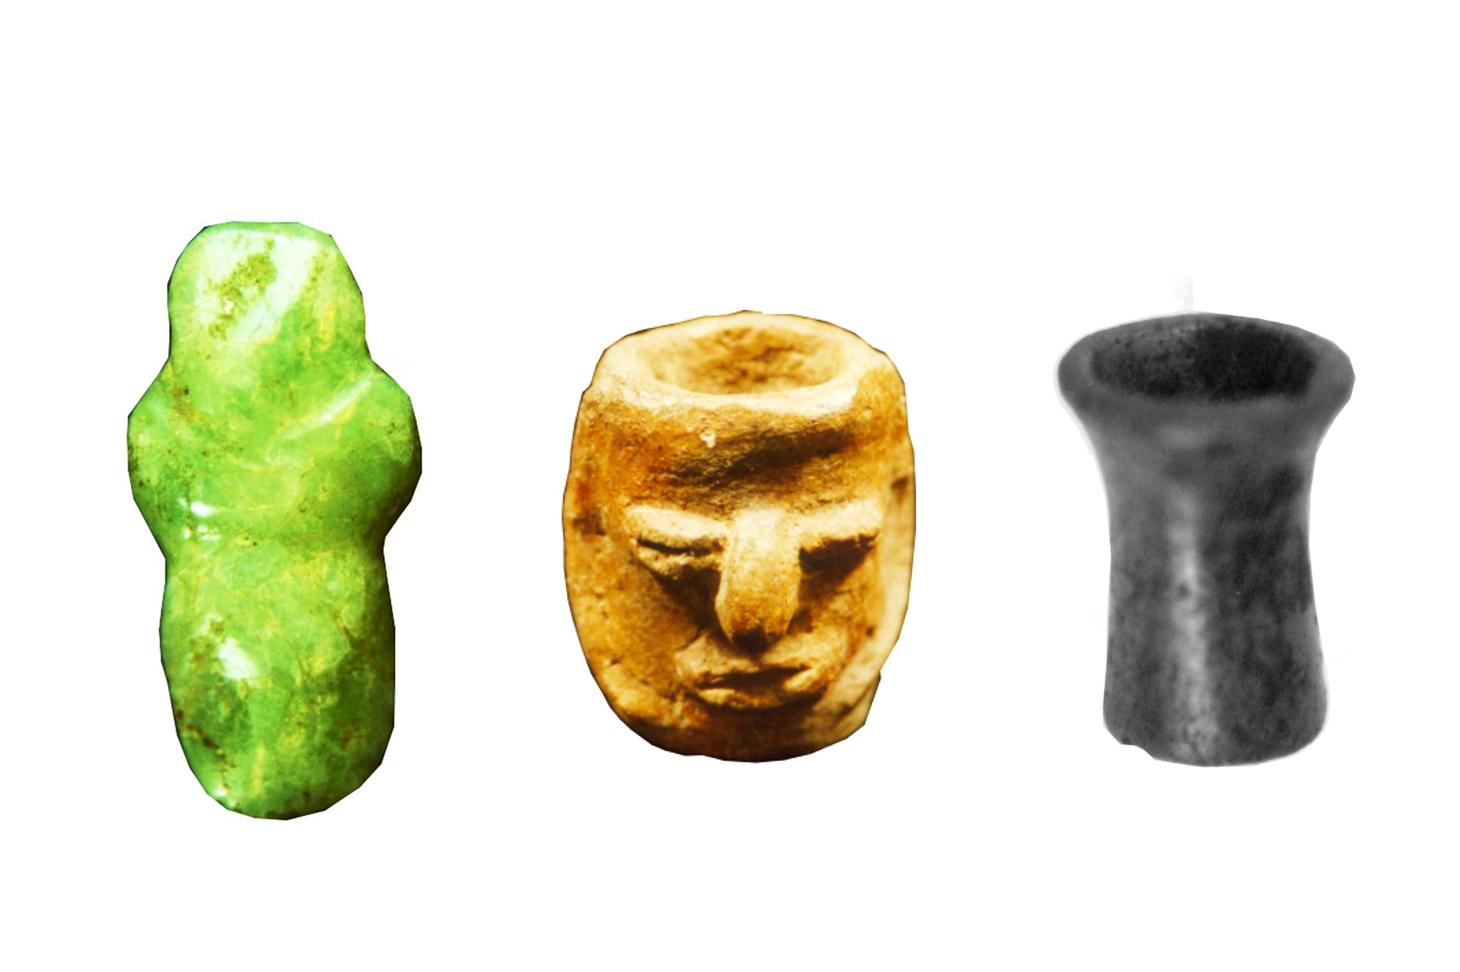 Estas son las tres piezas que fueron extraídas del ajuar de un entierro prehispánico en una sala abierta al público. De izquierda a derecha: dije de jadeíta, cilindro antropomorfo y orejera. Imágenes cortesía de Secultura.